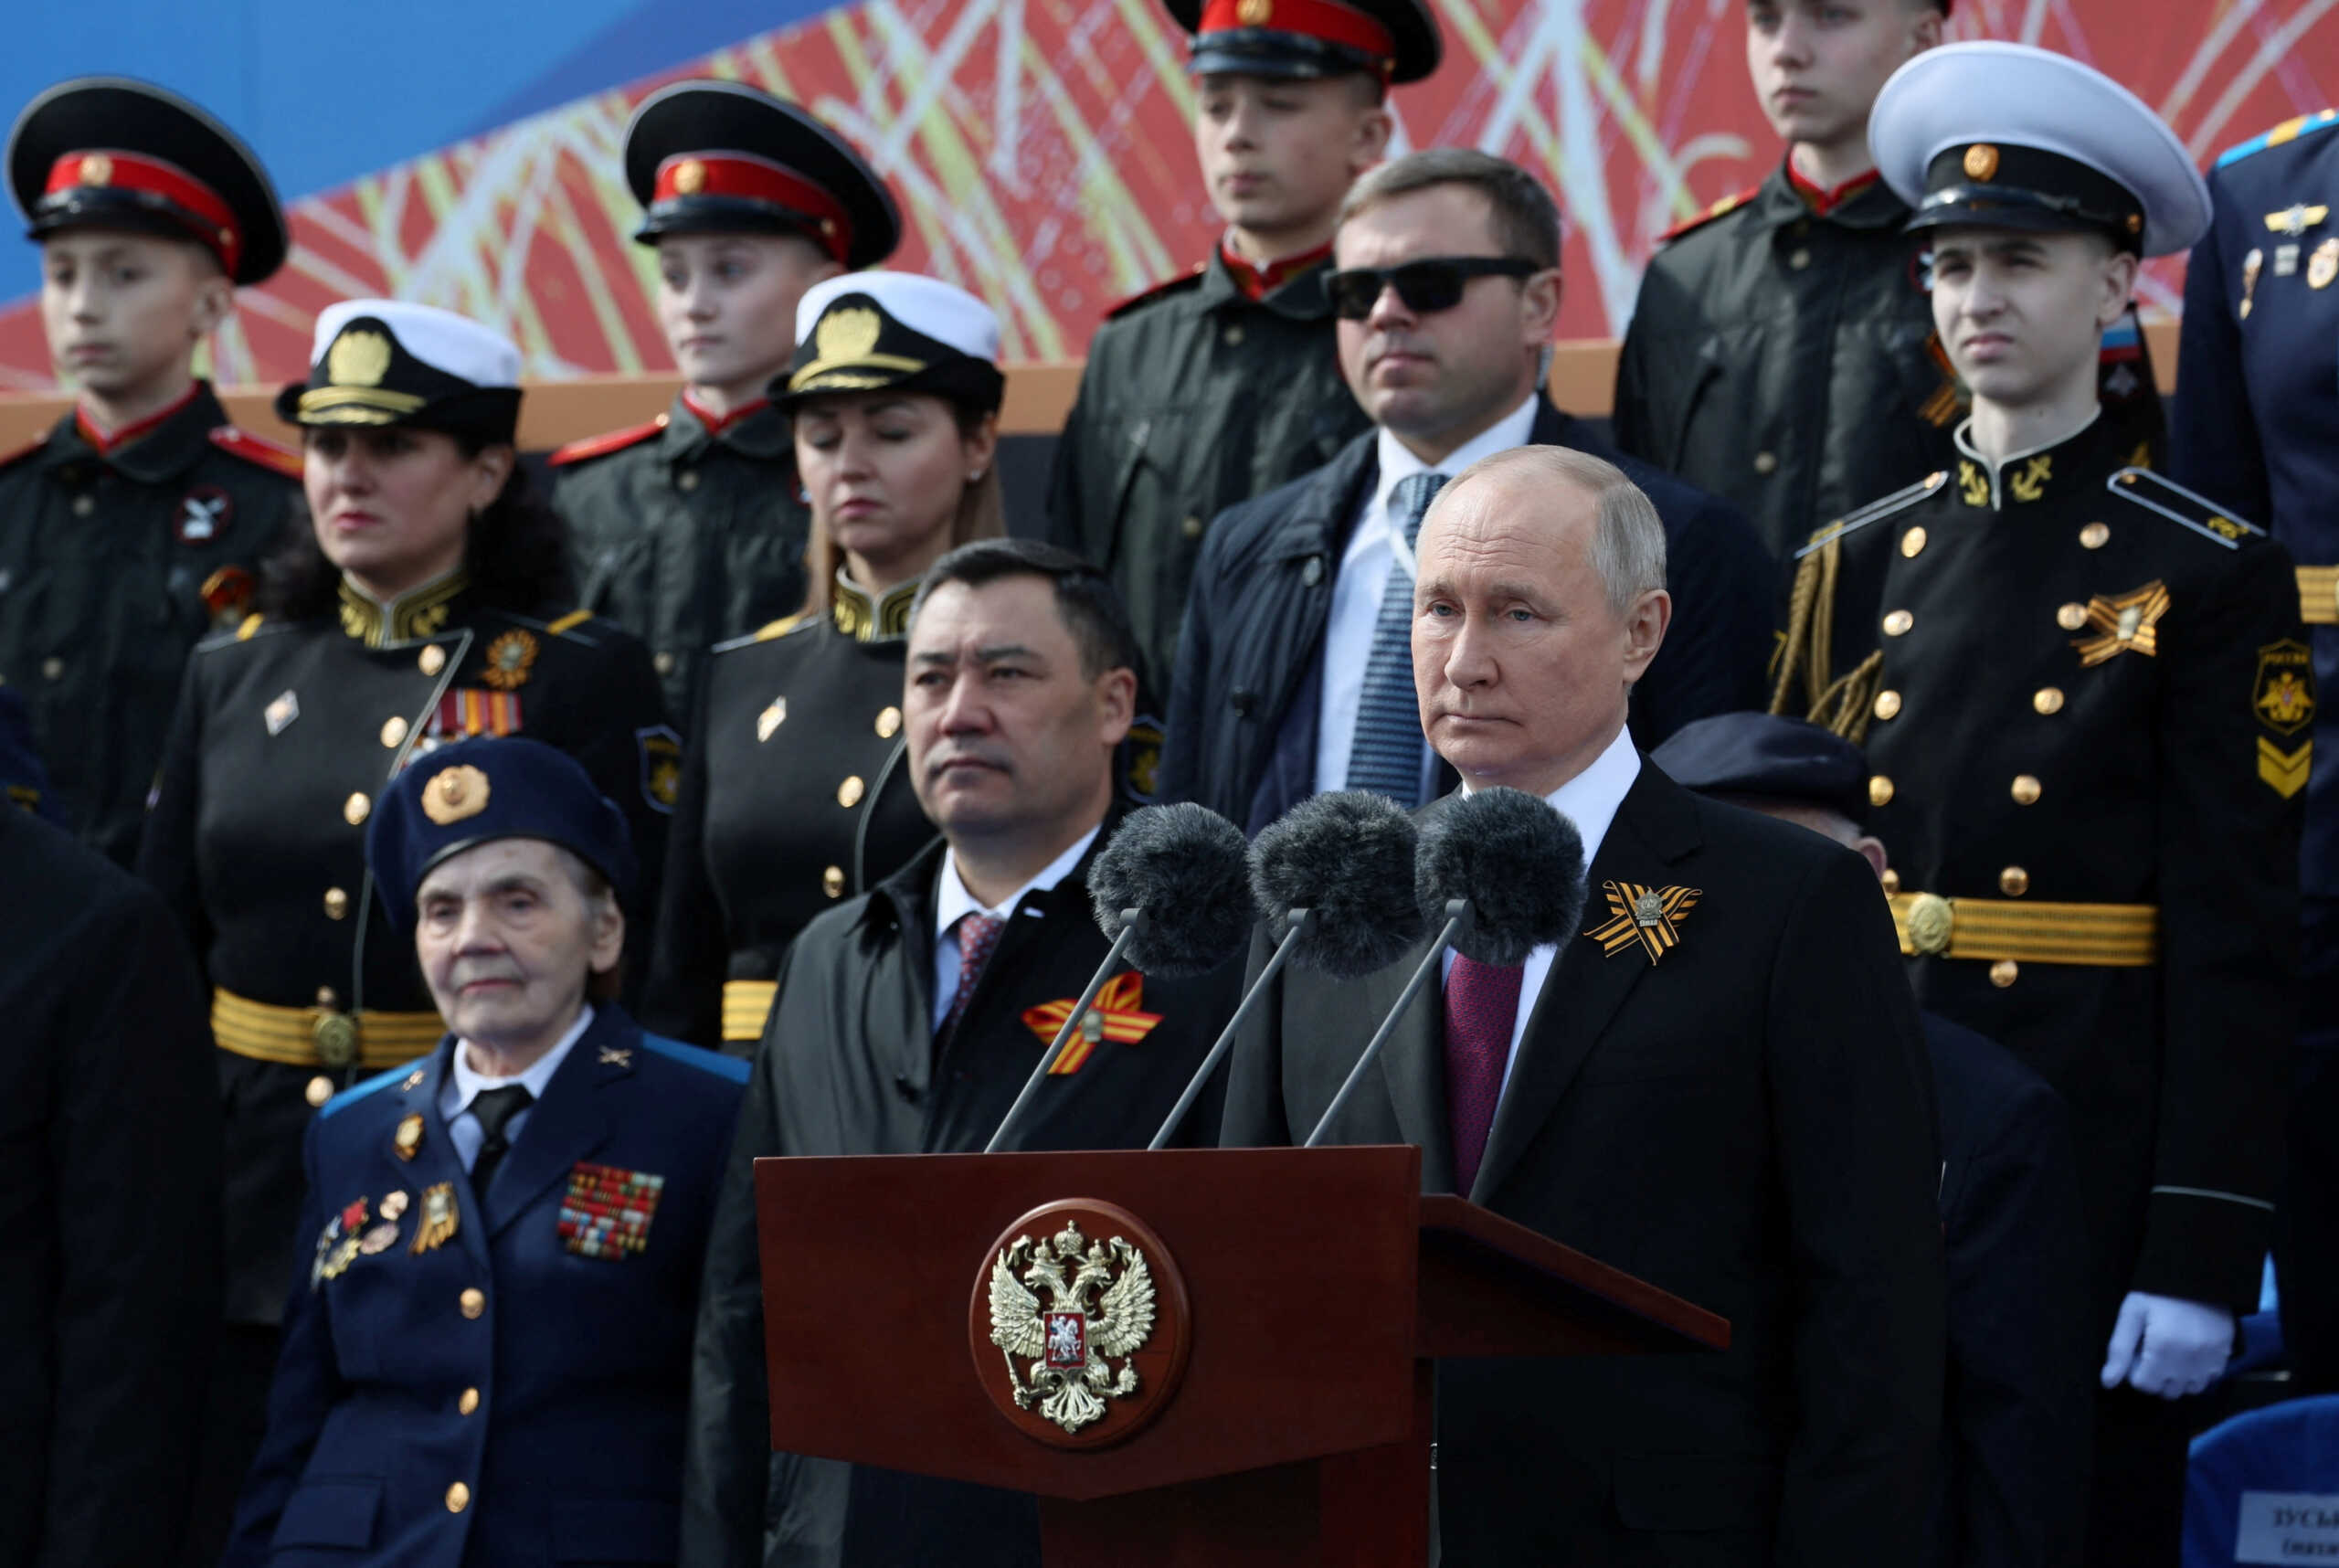 Πόλεμος στην Ουκρανία: Εναντίον της Ρωσίας εξαπολύεται πραγματικός πόλεμος, τόνισε ο Βλαντιμίρ Πούτιν